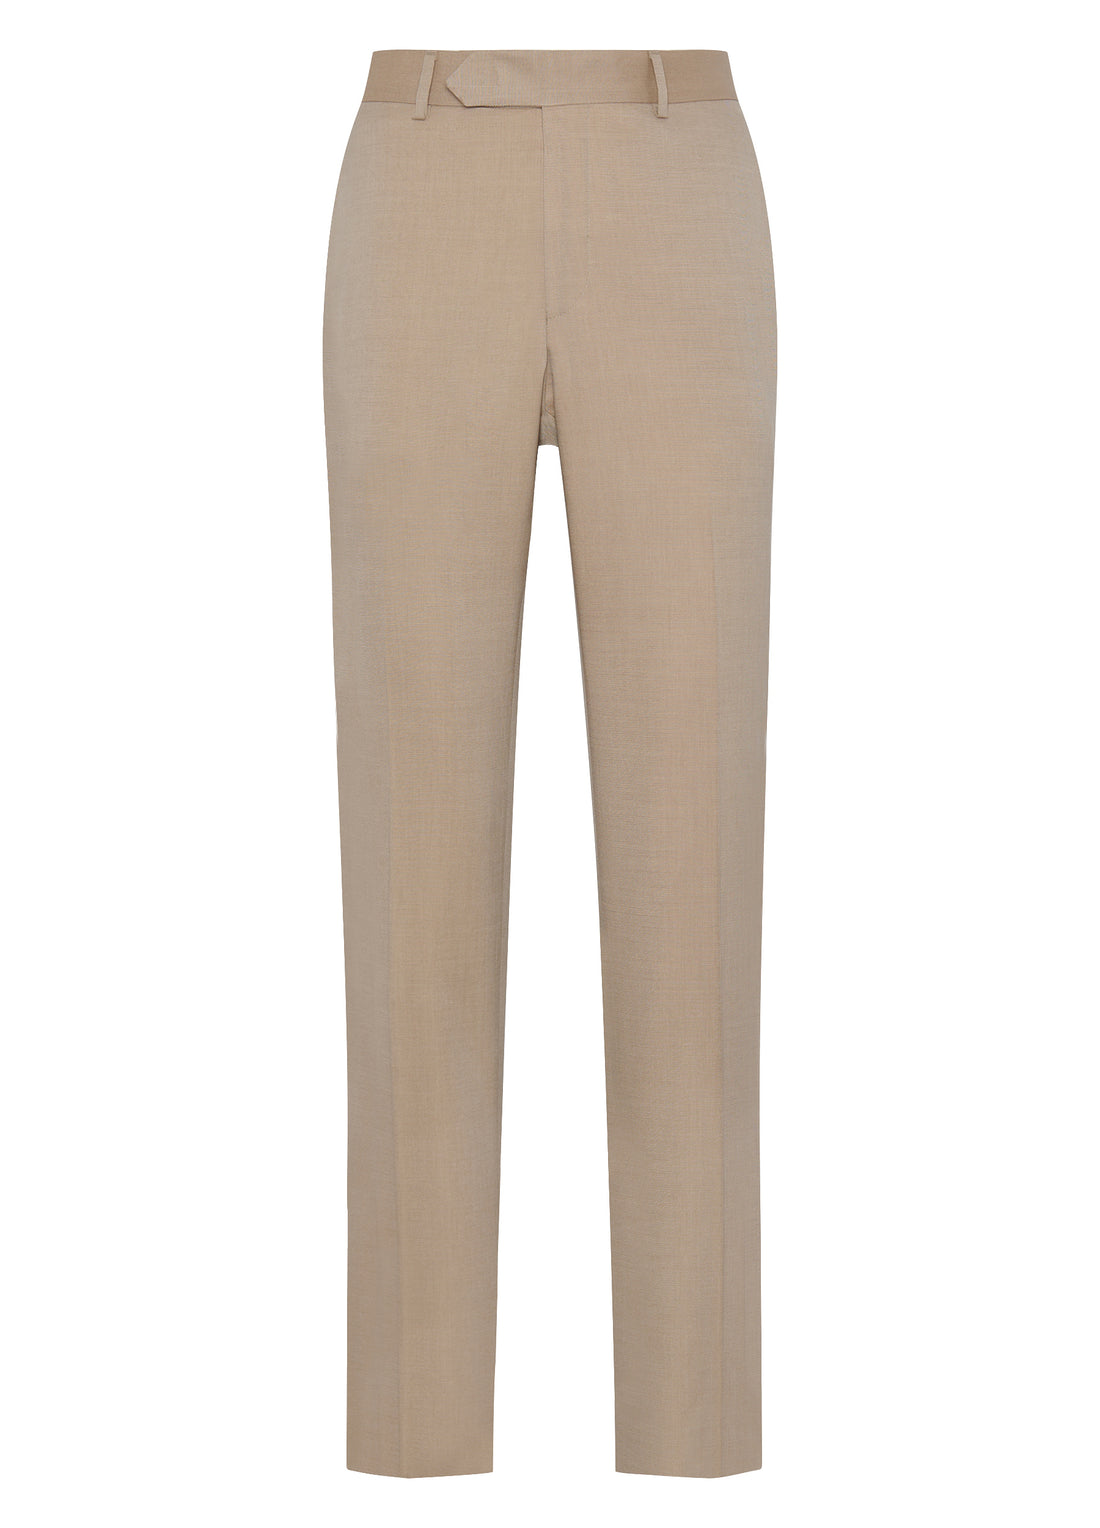 Luxury Samuelsohn Tan Cotton Wool Silk Twill Pants